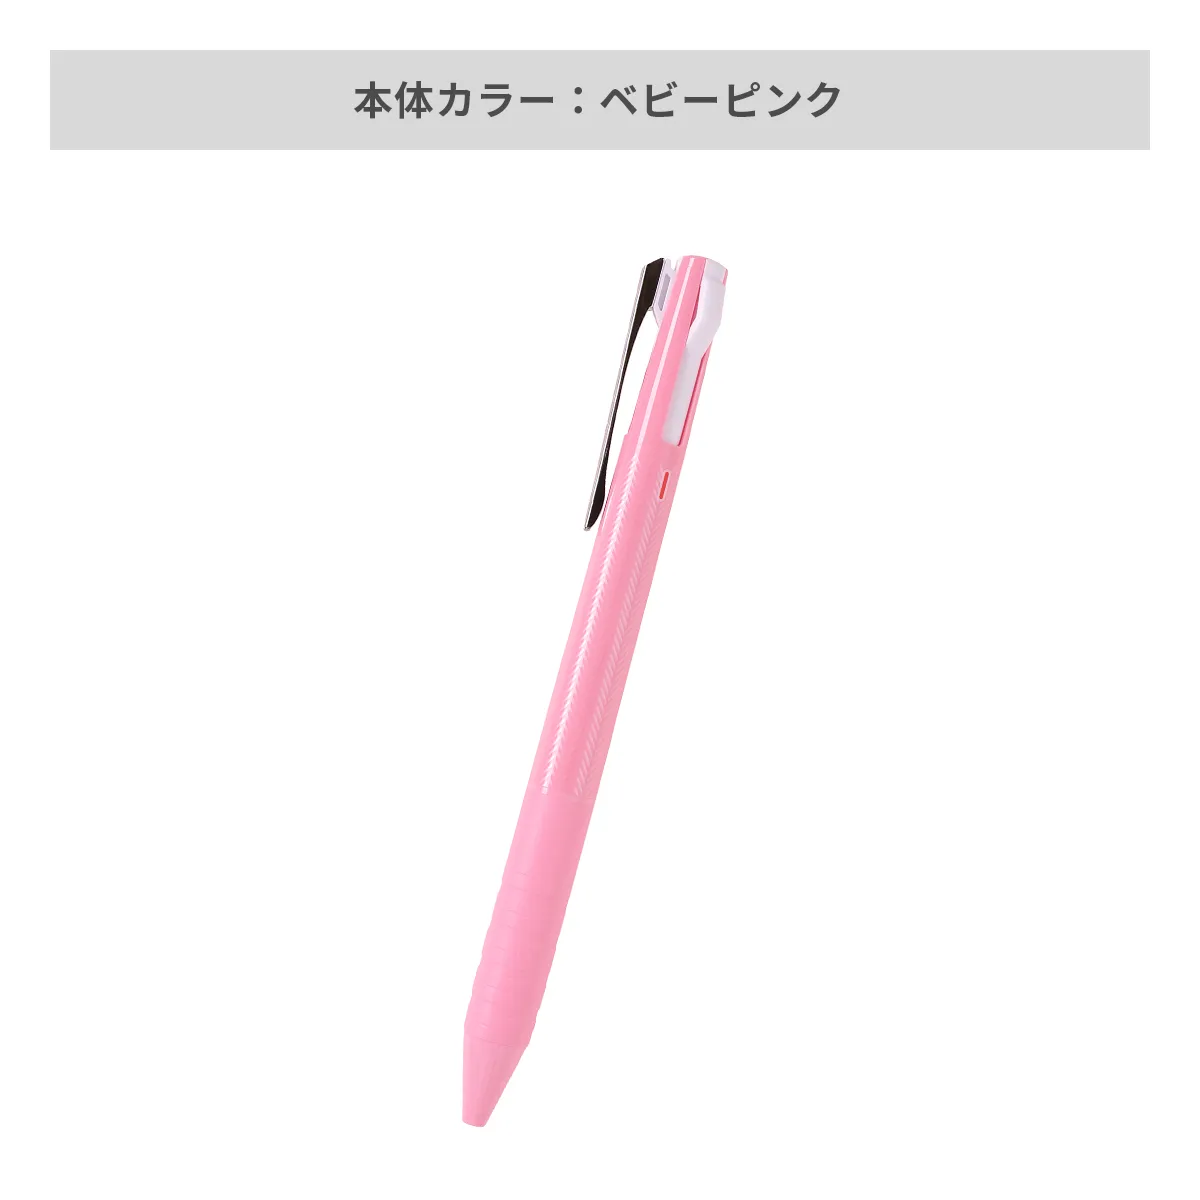 三菱鉛筆 ジェットストリーム スリムコンパクト 3色ボールペン 0.38mm【名入れボールペン / パッド印刷】 画像6